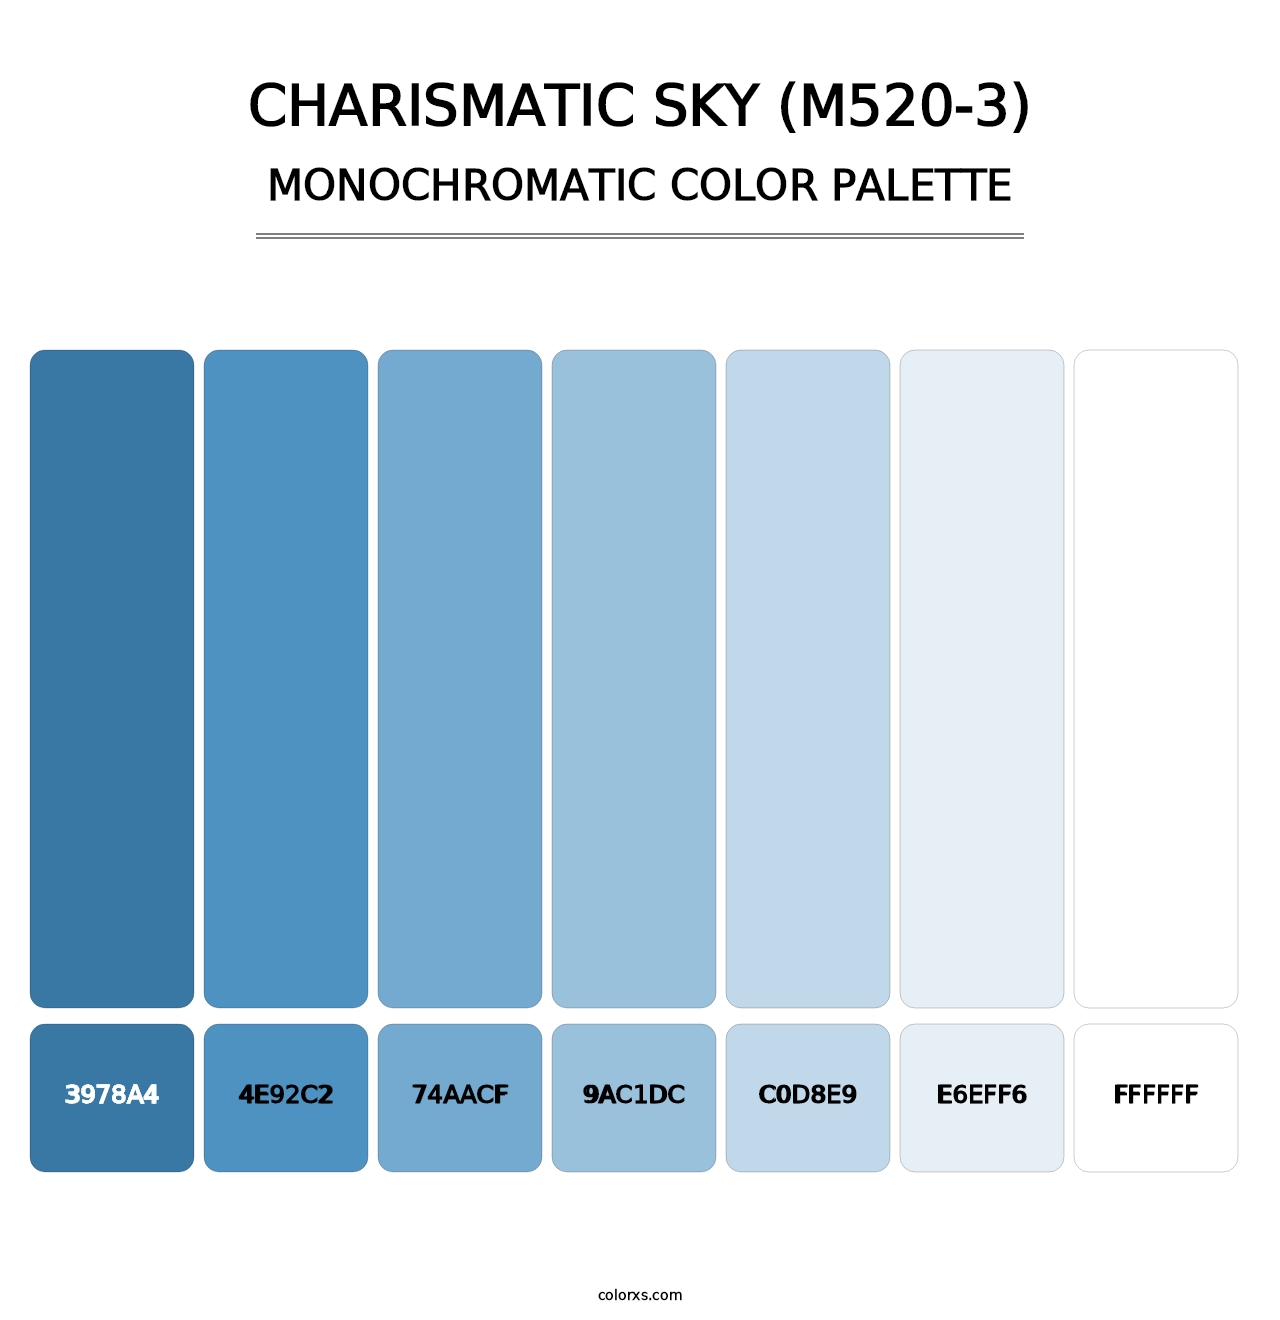 Charismatic Sky (M520-3) - Monochromatic Color Palette